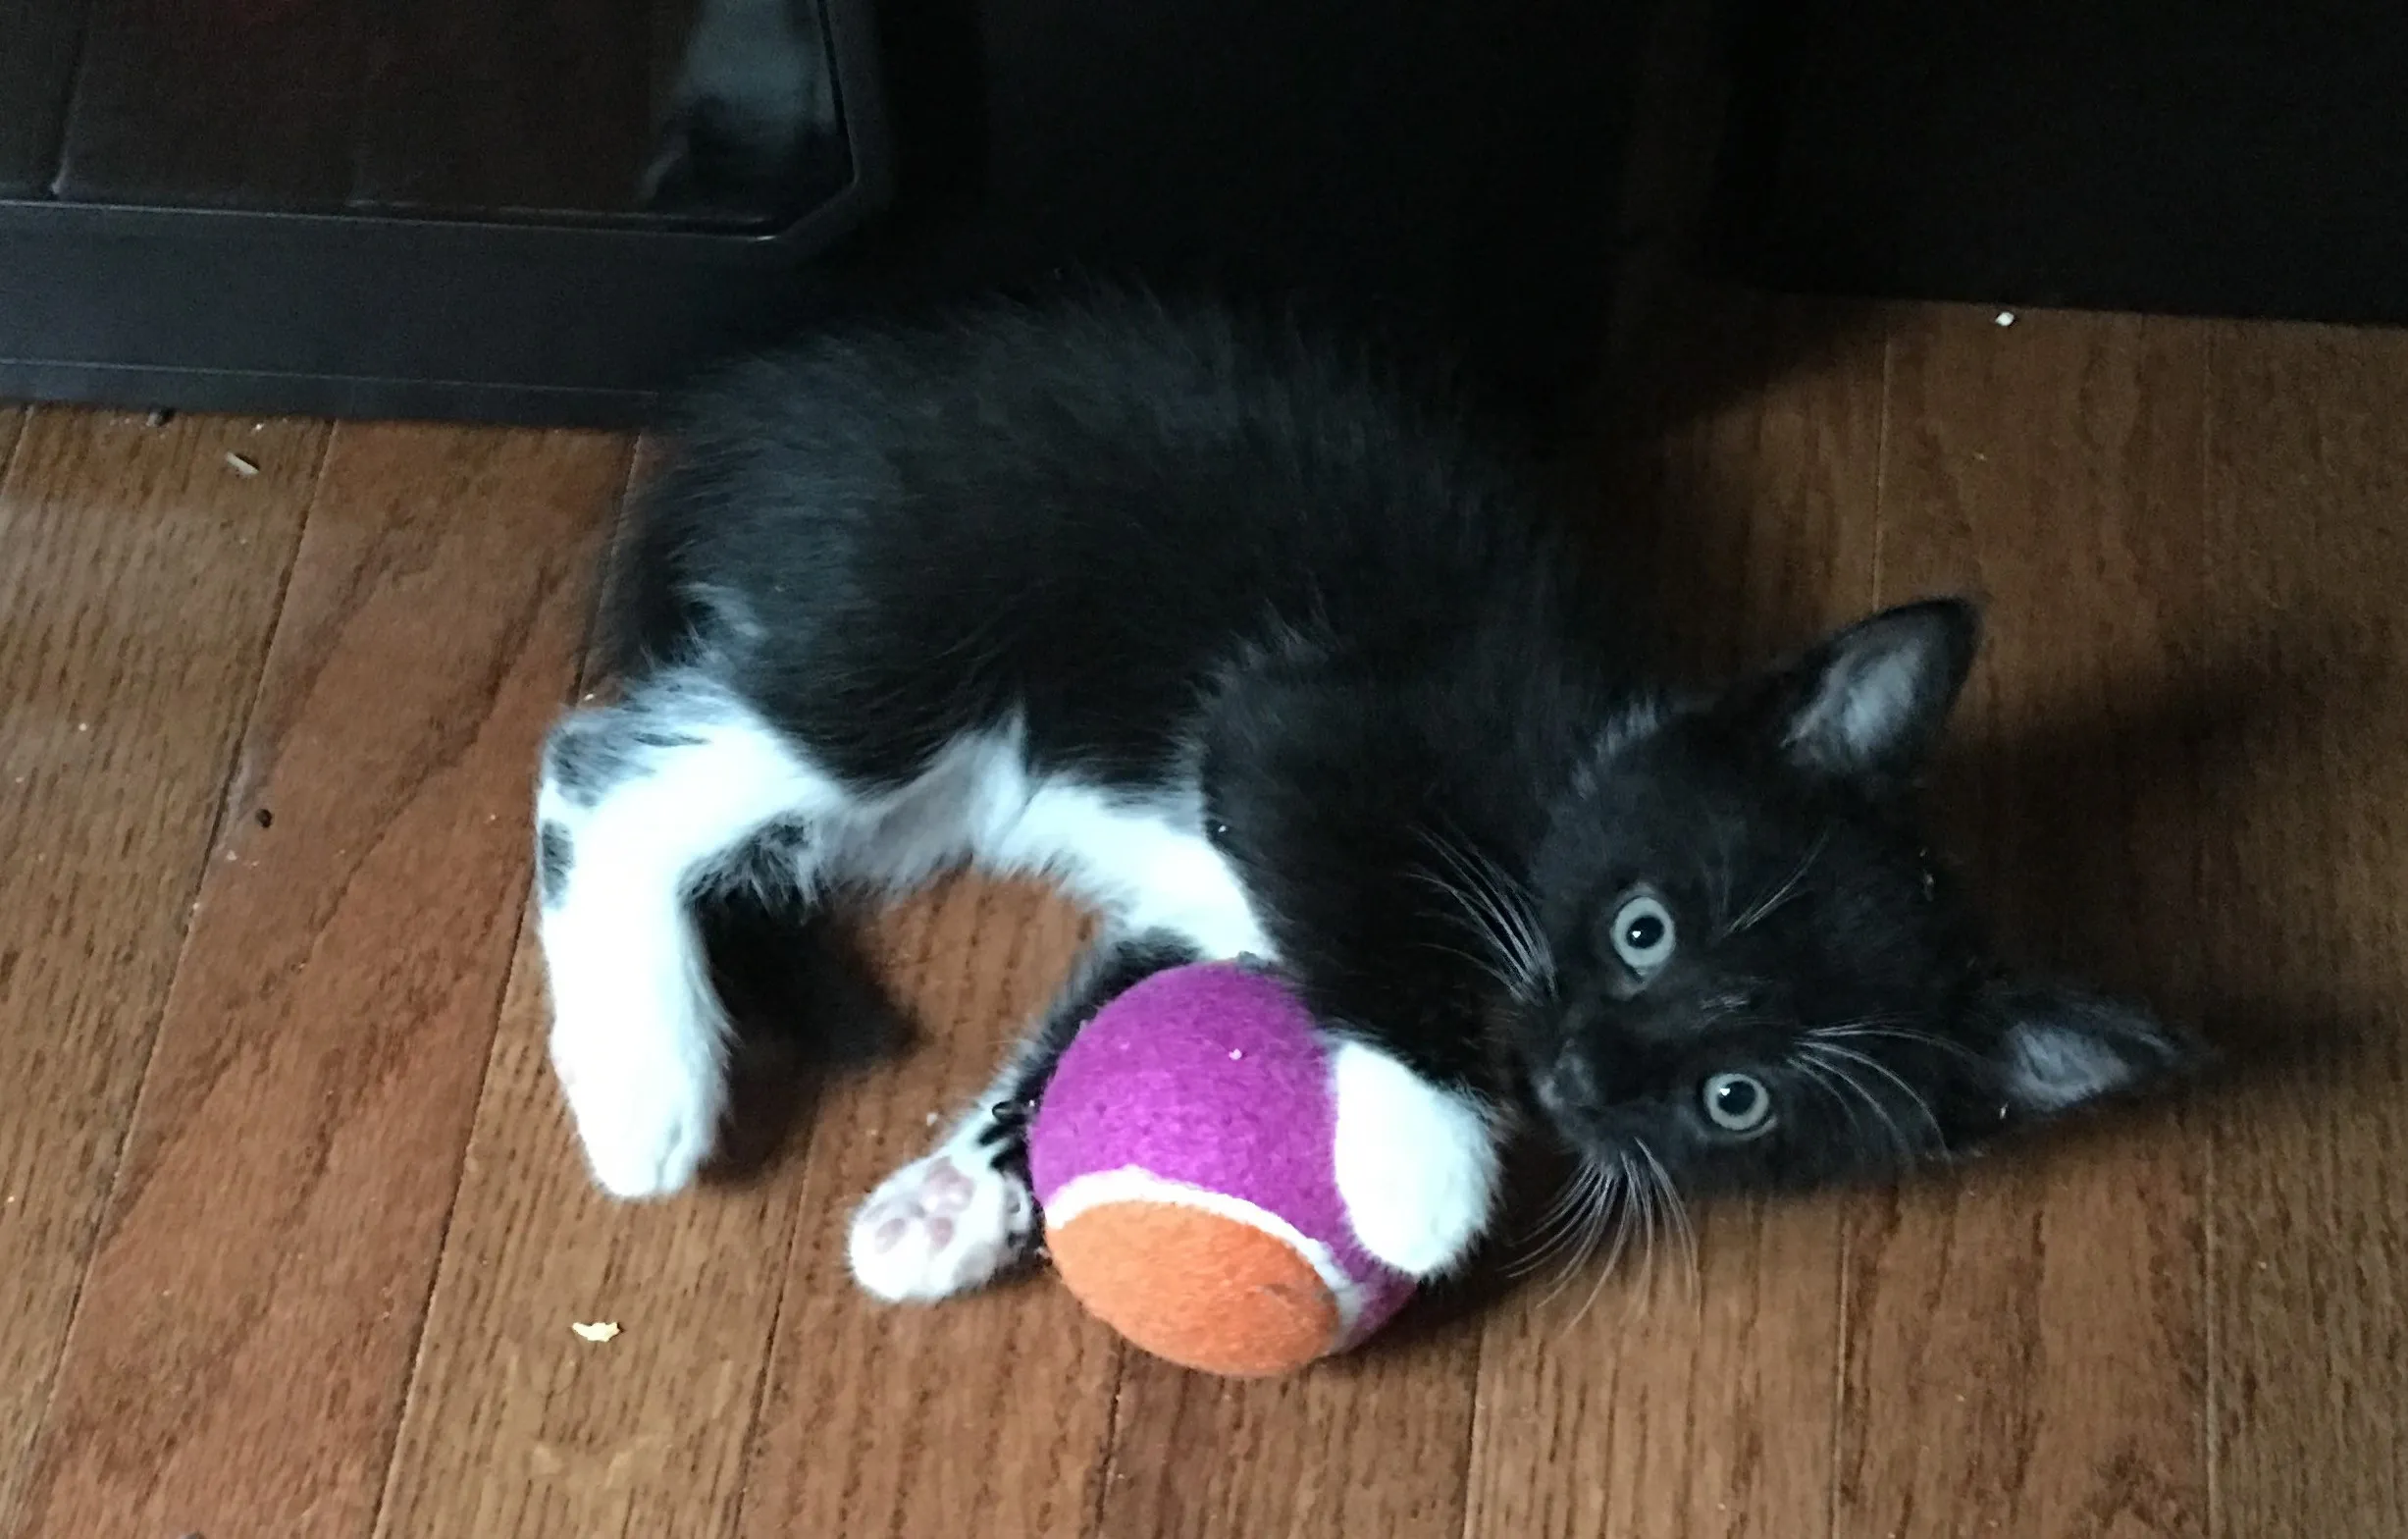 Kitten Rengar playing with a tennis ball